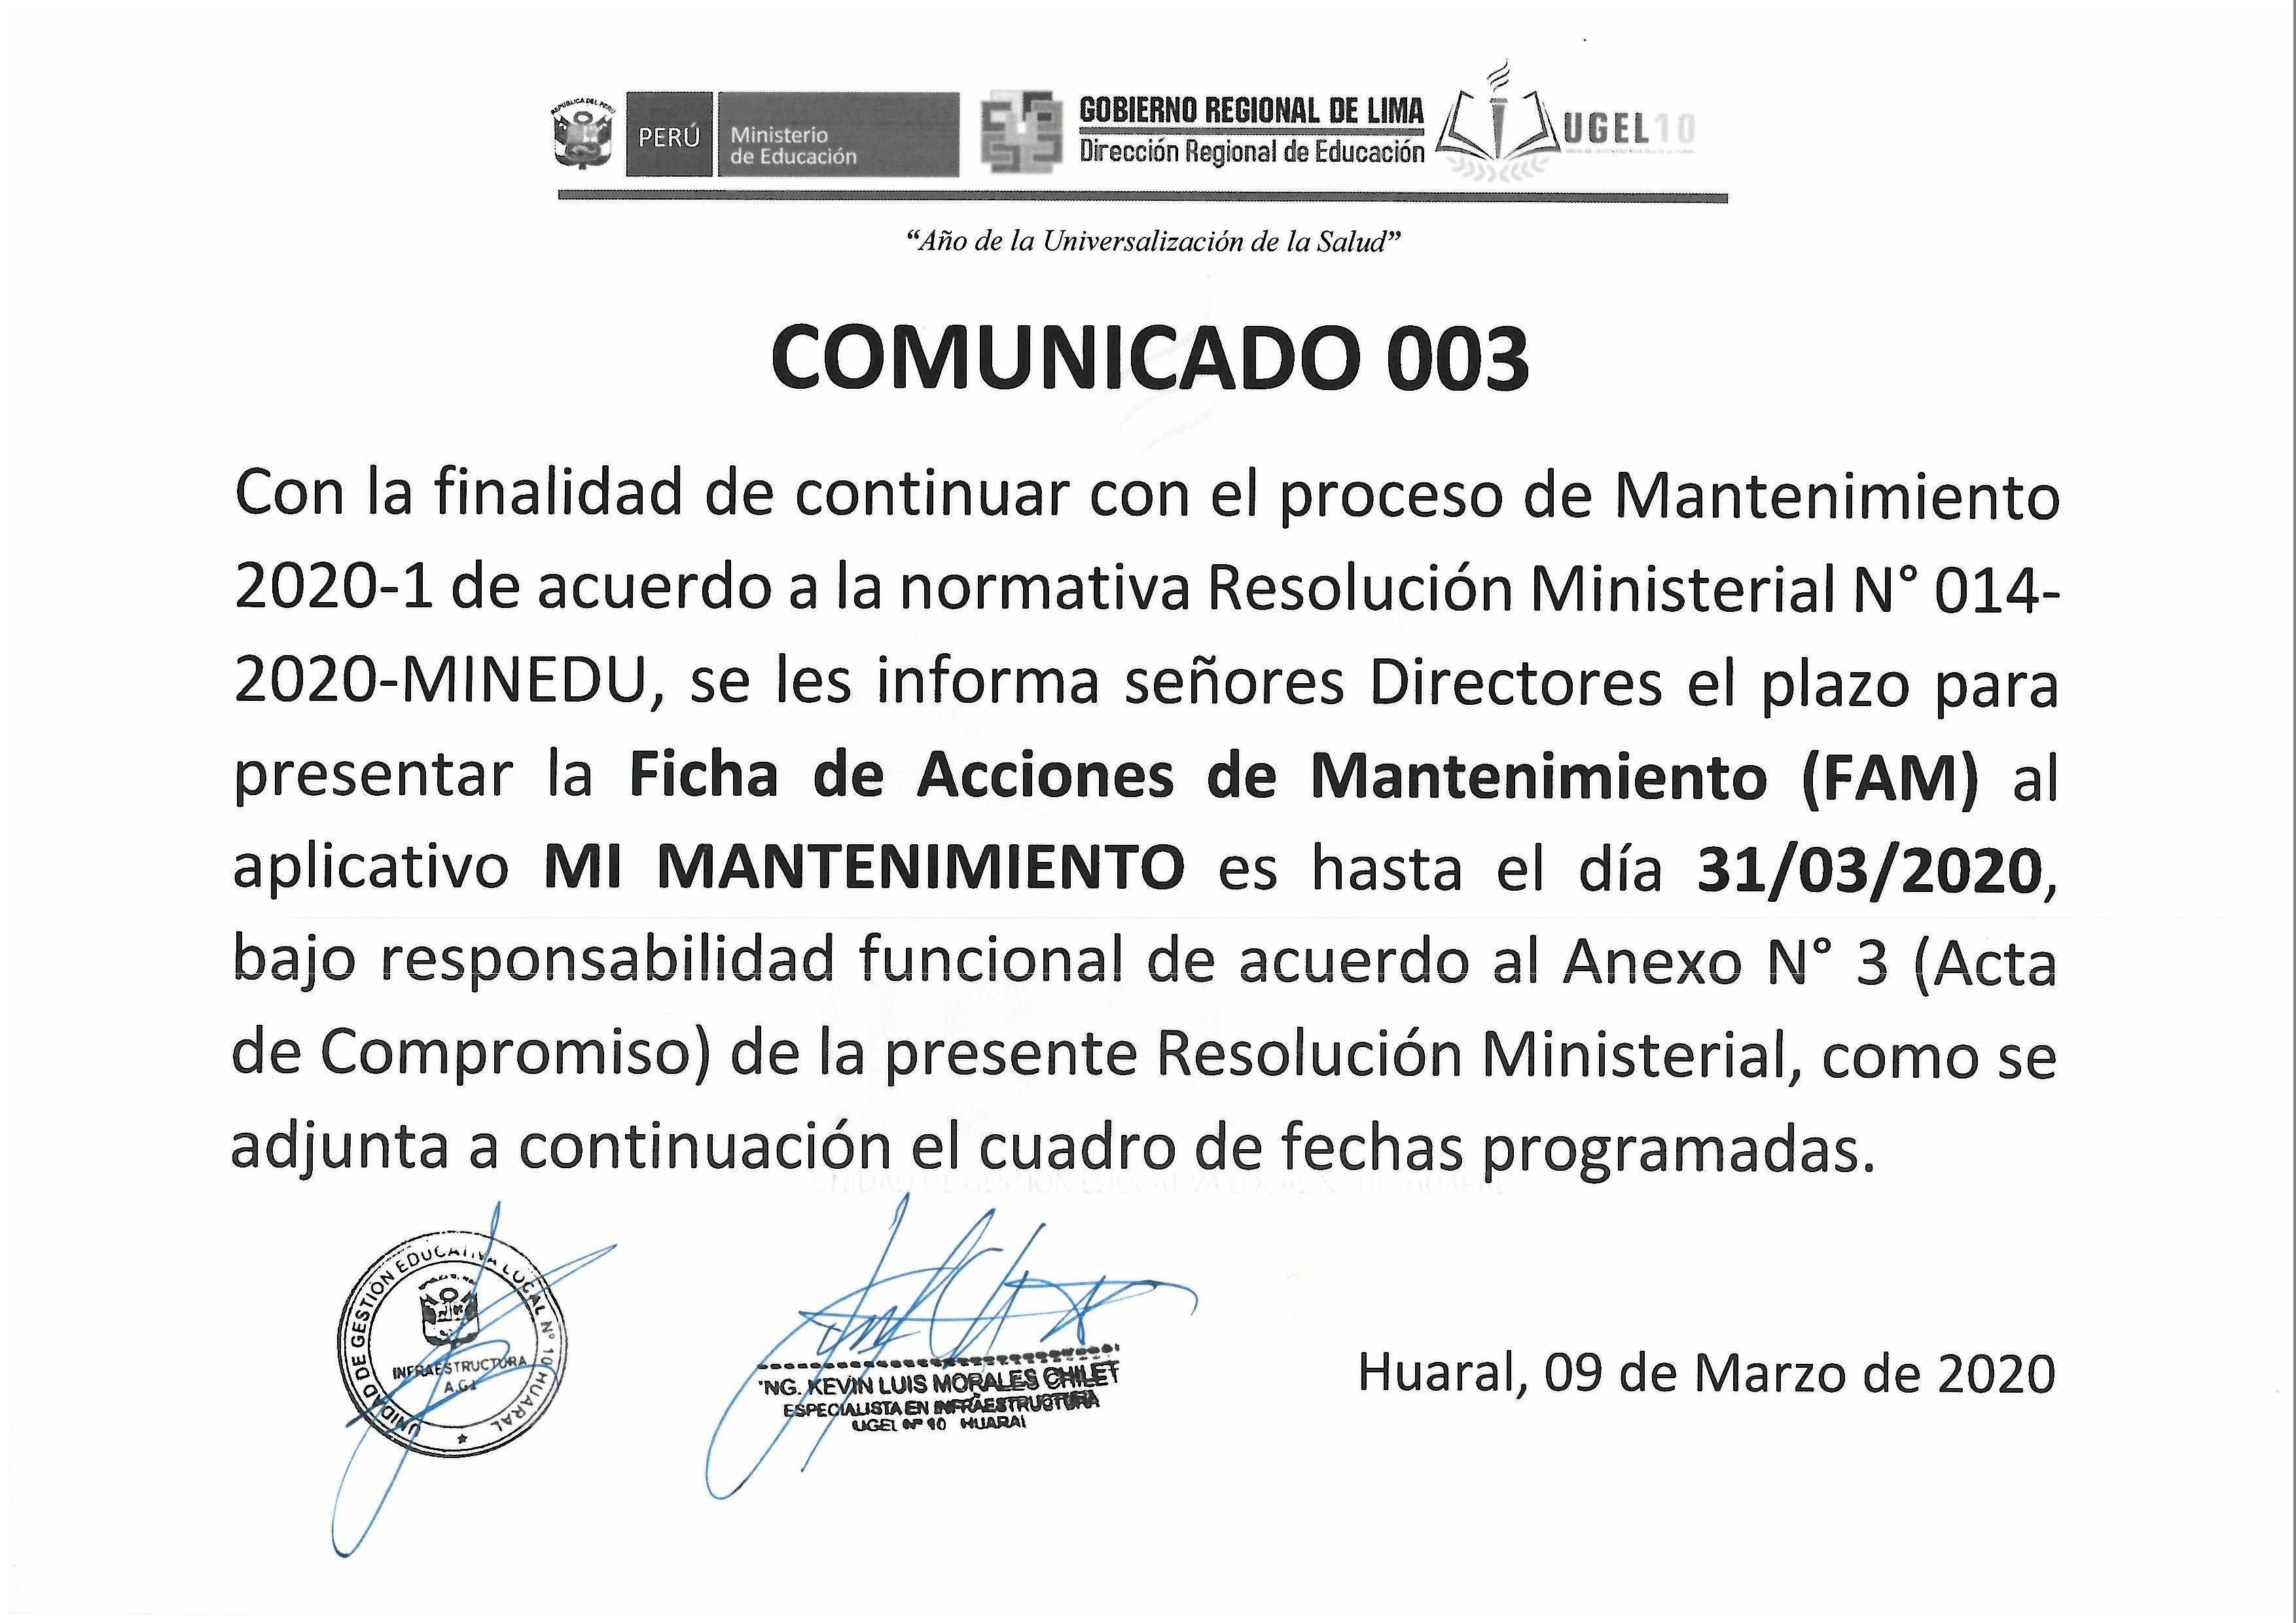 PRESENTACIÓN DE LA FICHA DE ACCIONES DE MANTENIMIENTO (FAM)